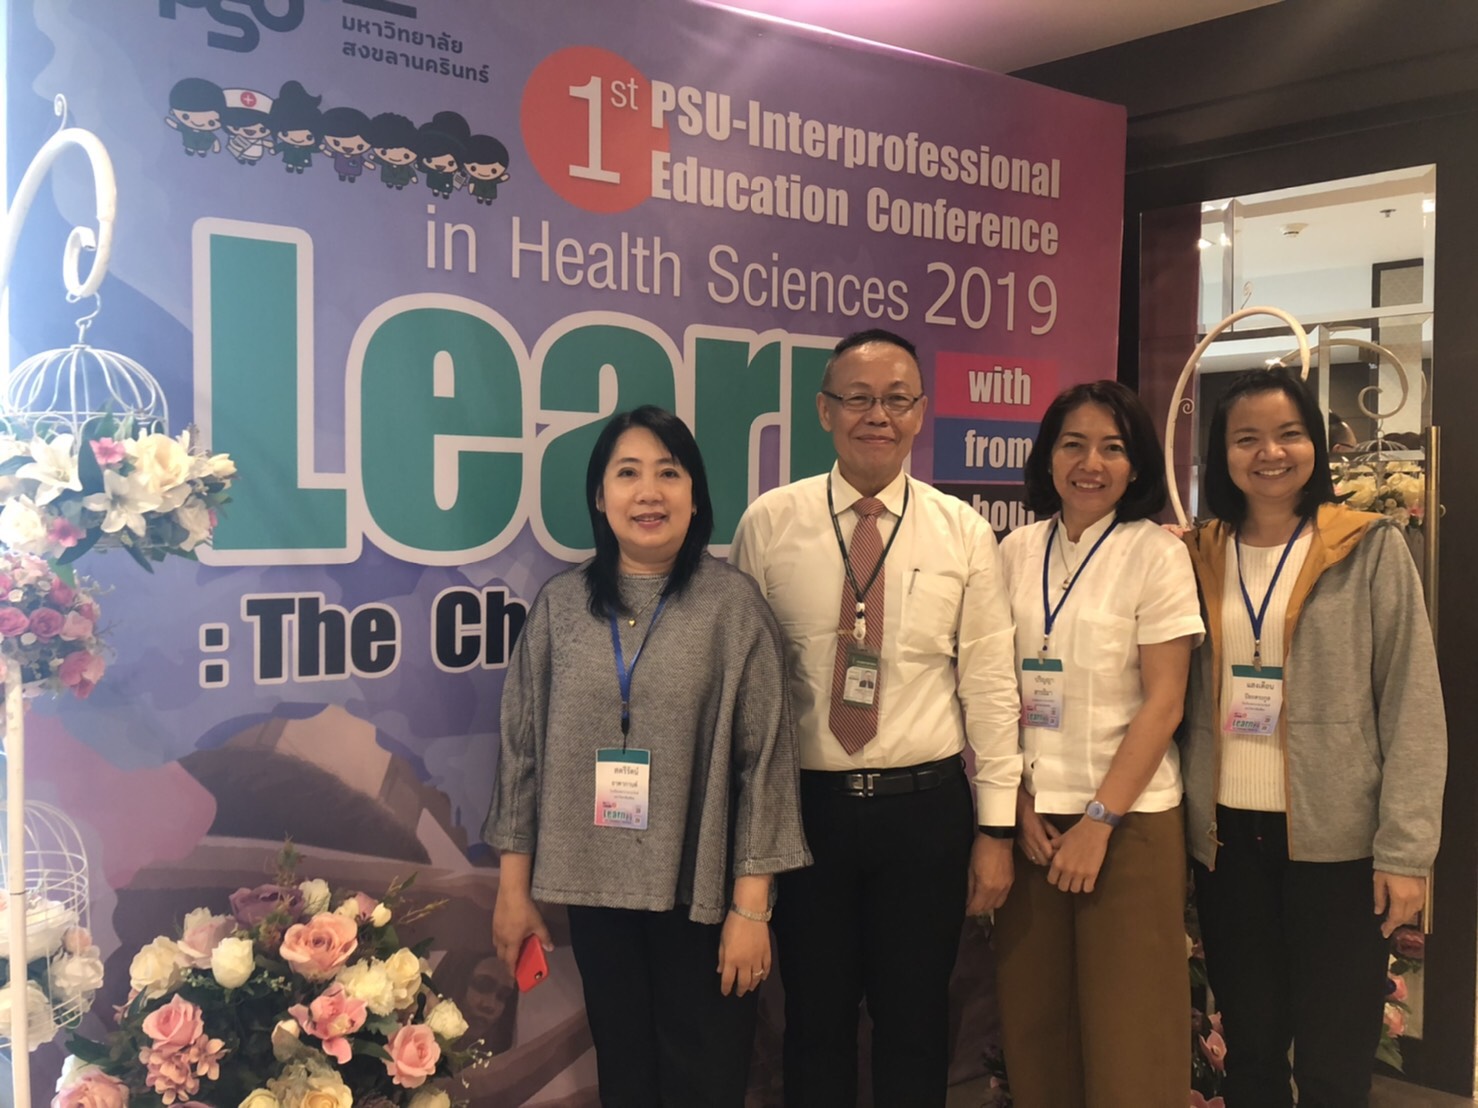 รองผู้อำนวยการโรงเรียนพยาบาลรามาธิบดี ฝ่ายการศึกษาพยาบาลศาสตร์ ร่วมบรรยาย ในงานประชุมวิชาการ PSU-Interprofessional Education Conference in Health Sciences 2019